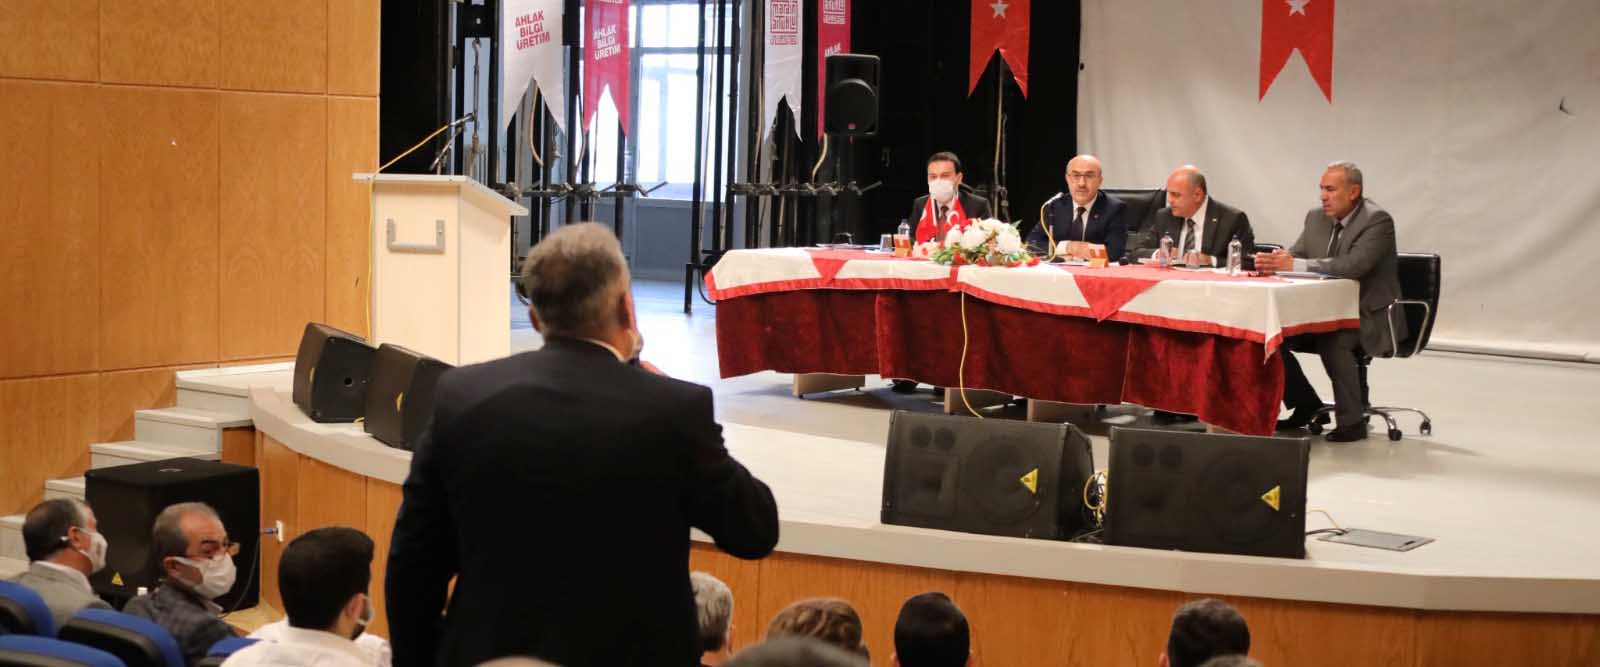 Vali Demirtaş, muhtarlar ve okul müdürleri buluşmalarını sürdürüyor